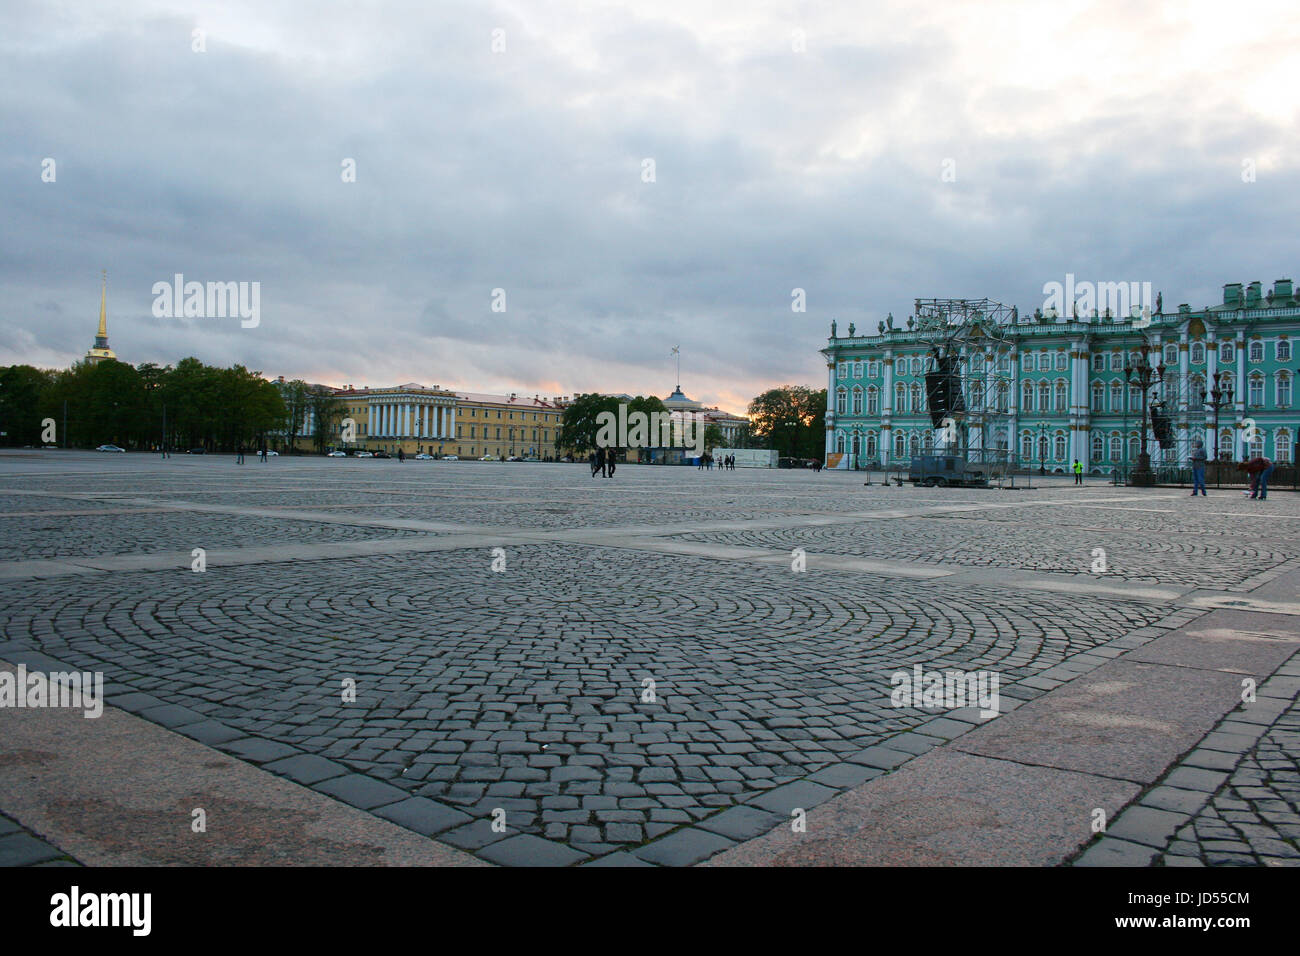 Palace (Place Dvortsovaya) à Saint-Pétersbourg à minuit - nuits blanches Banque D'Images